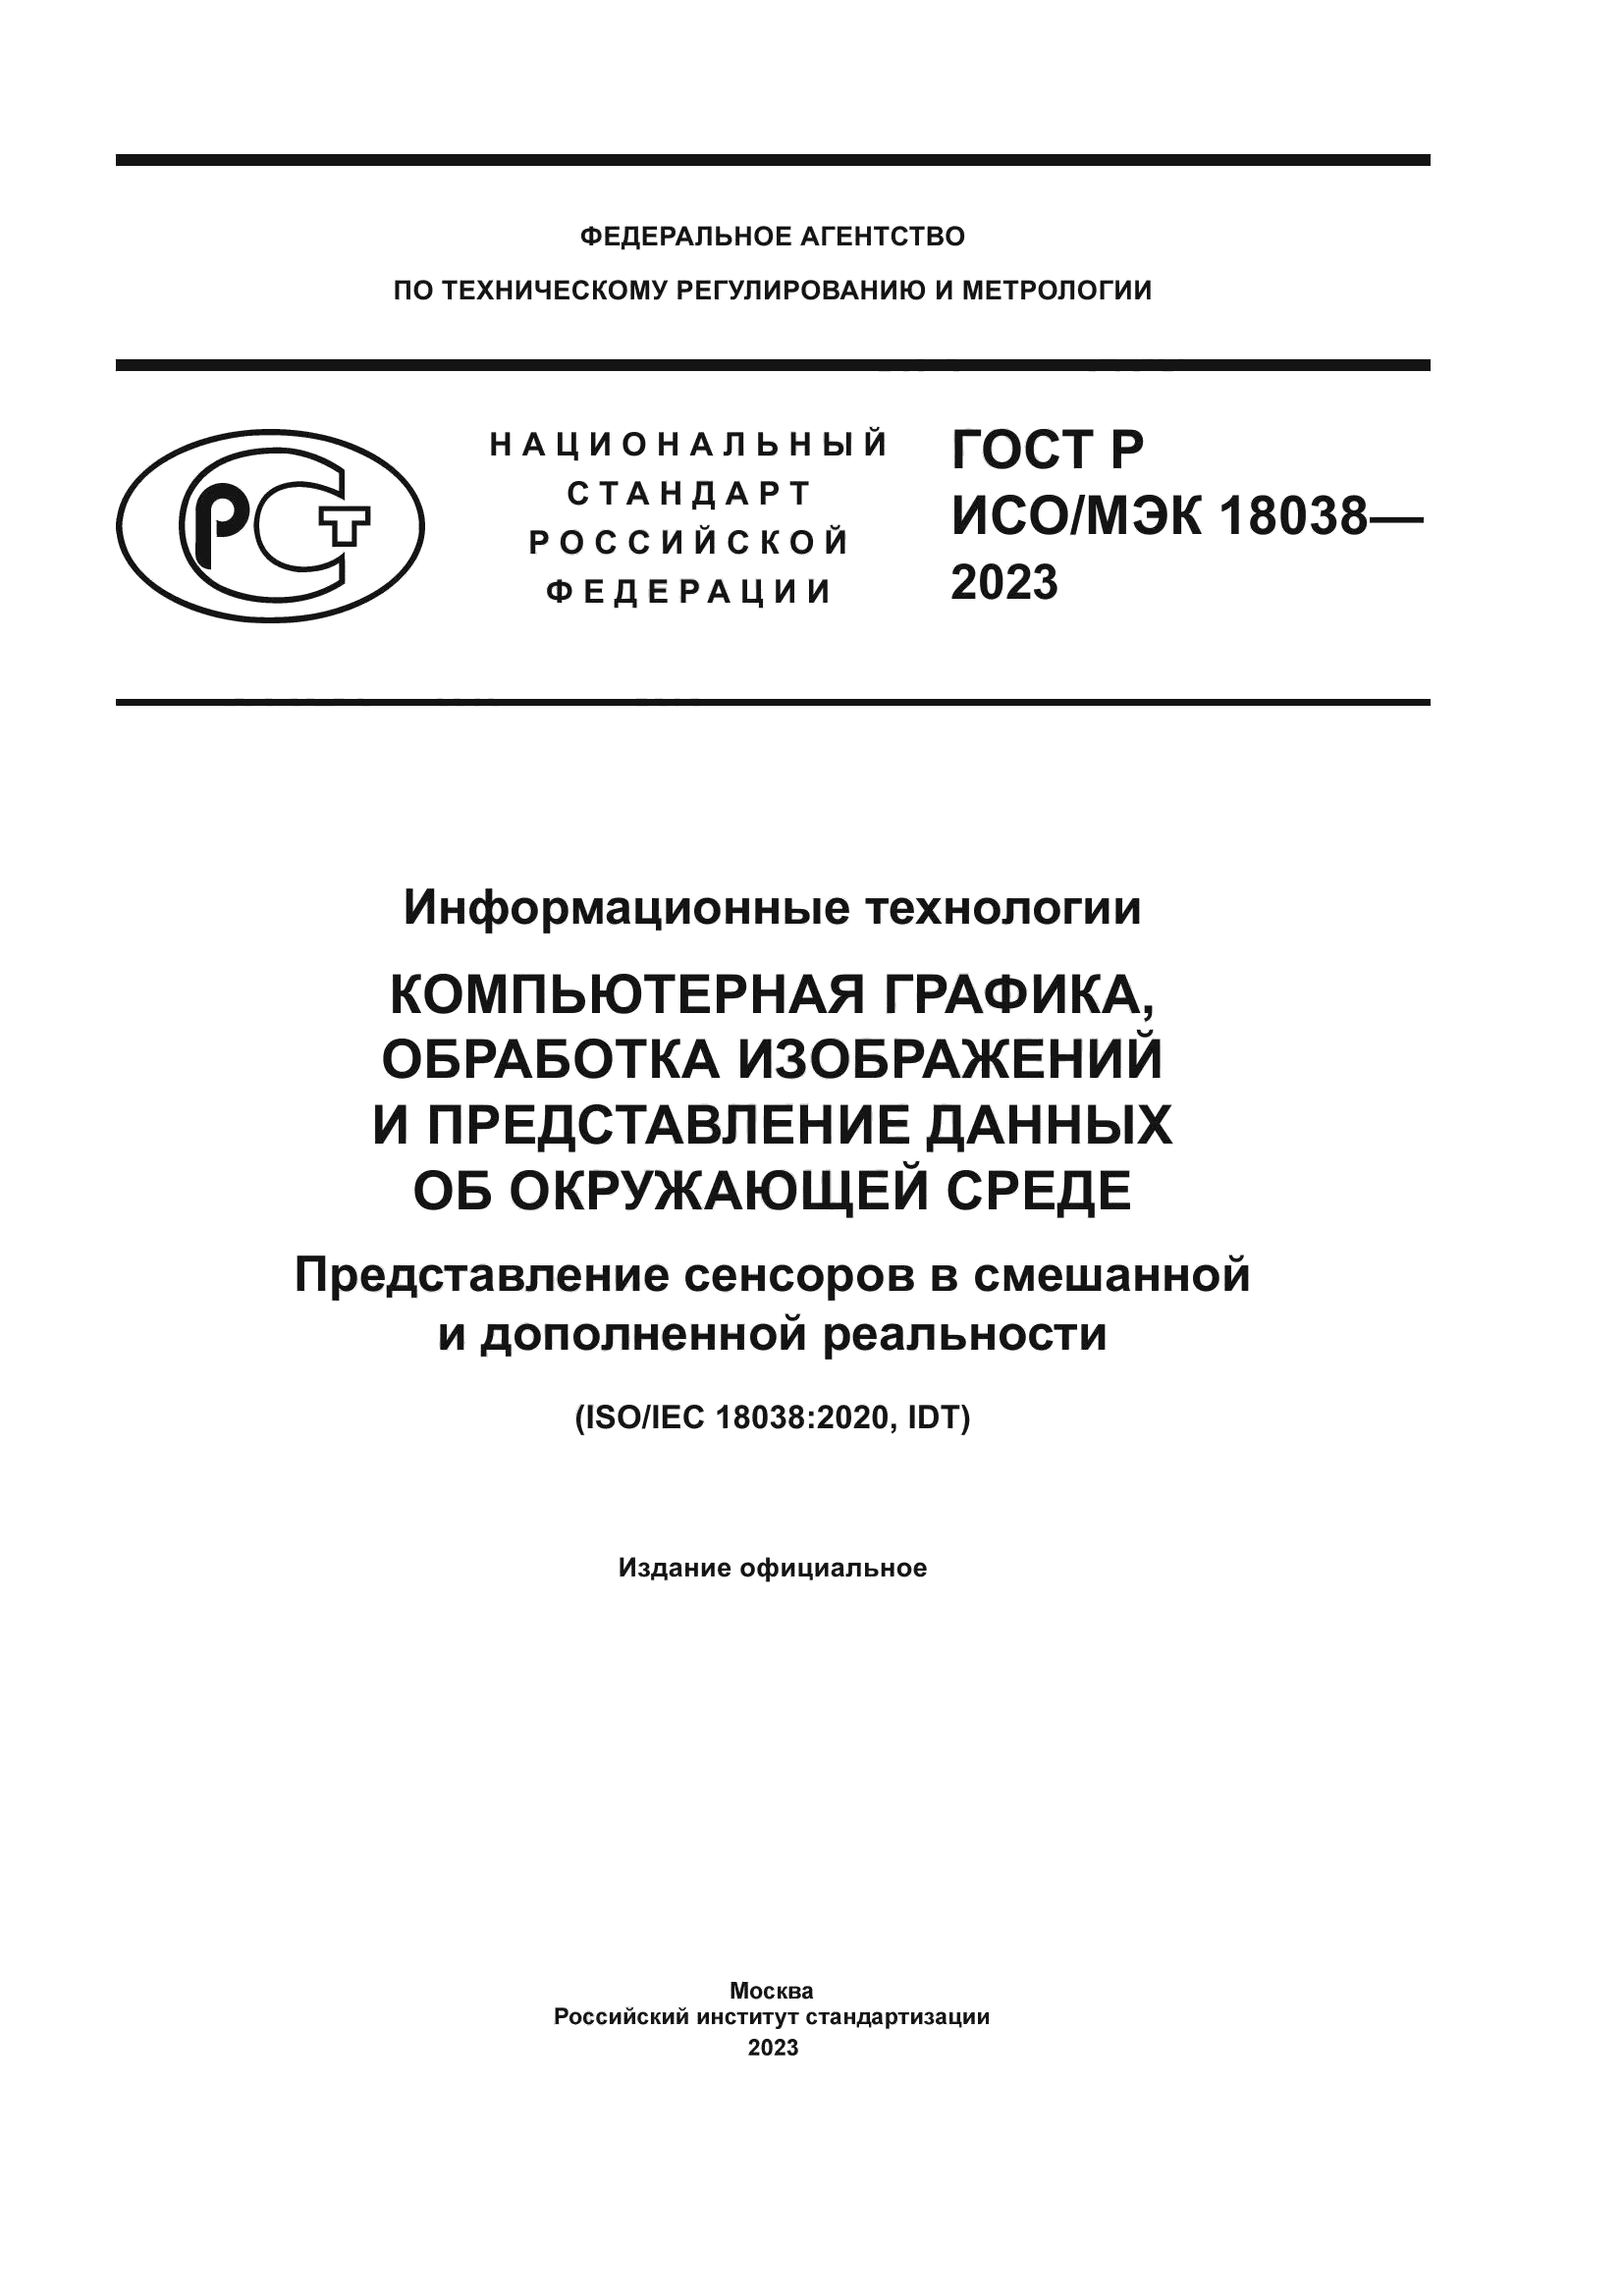 ГОСТ Р ИСО/МЭК 18038-2023